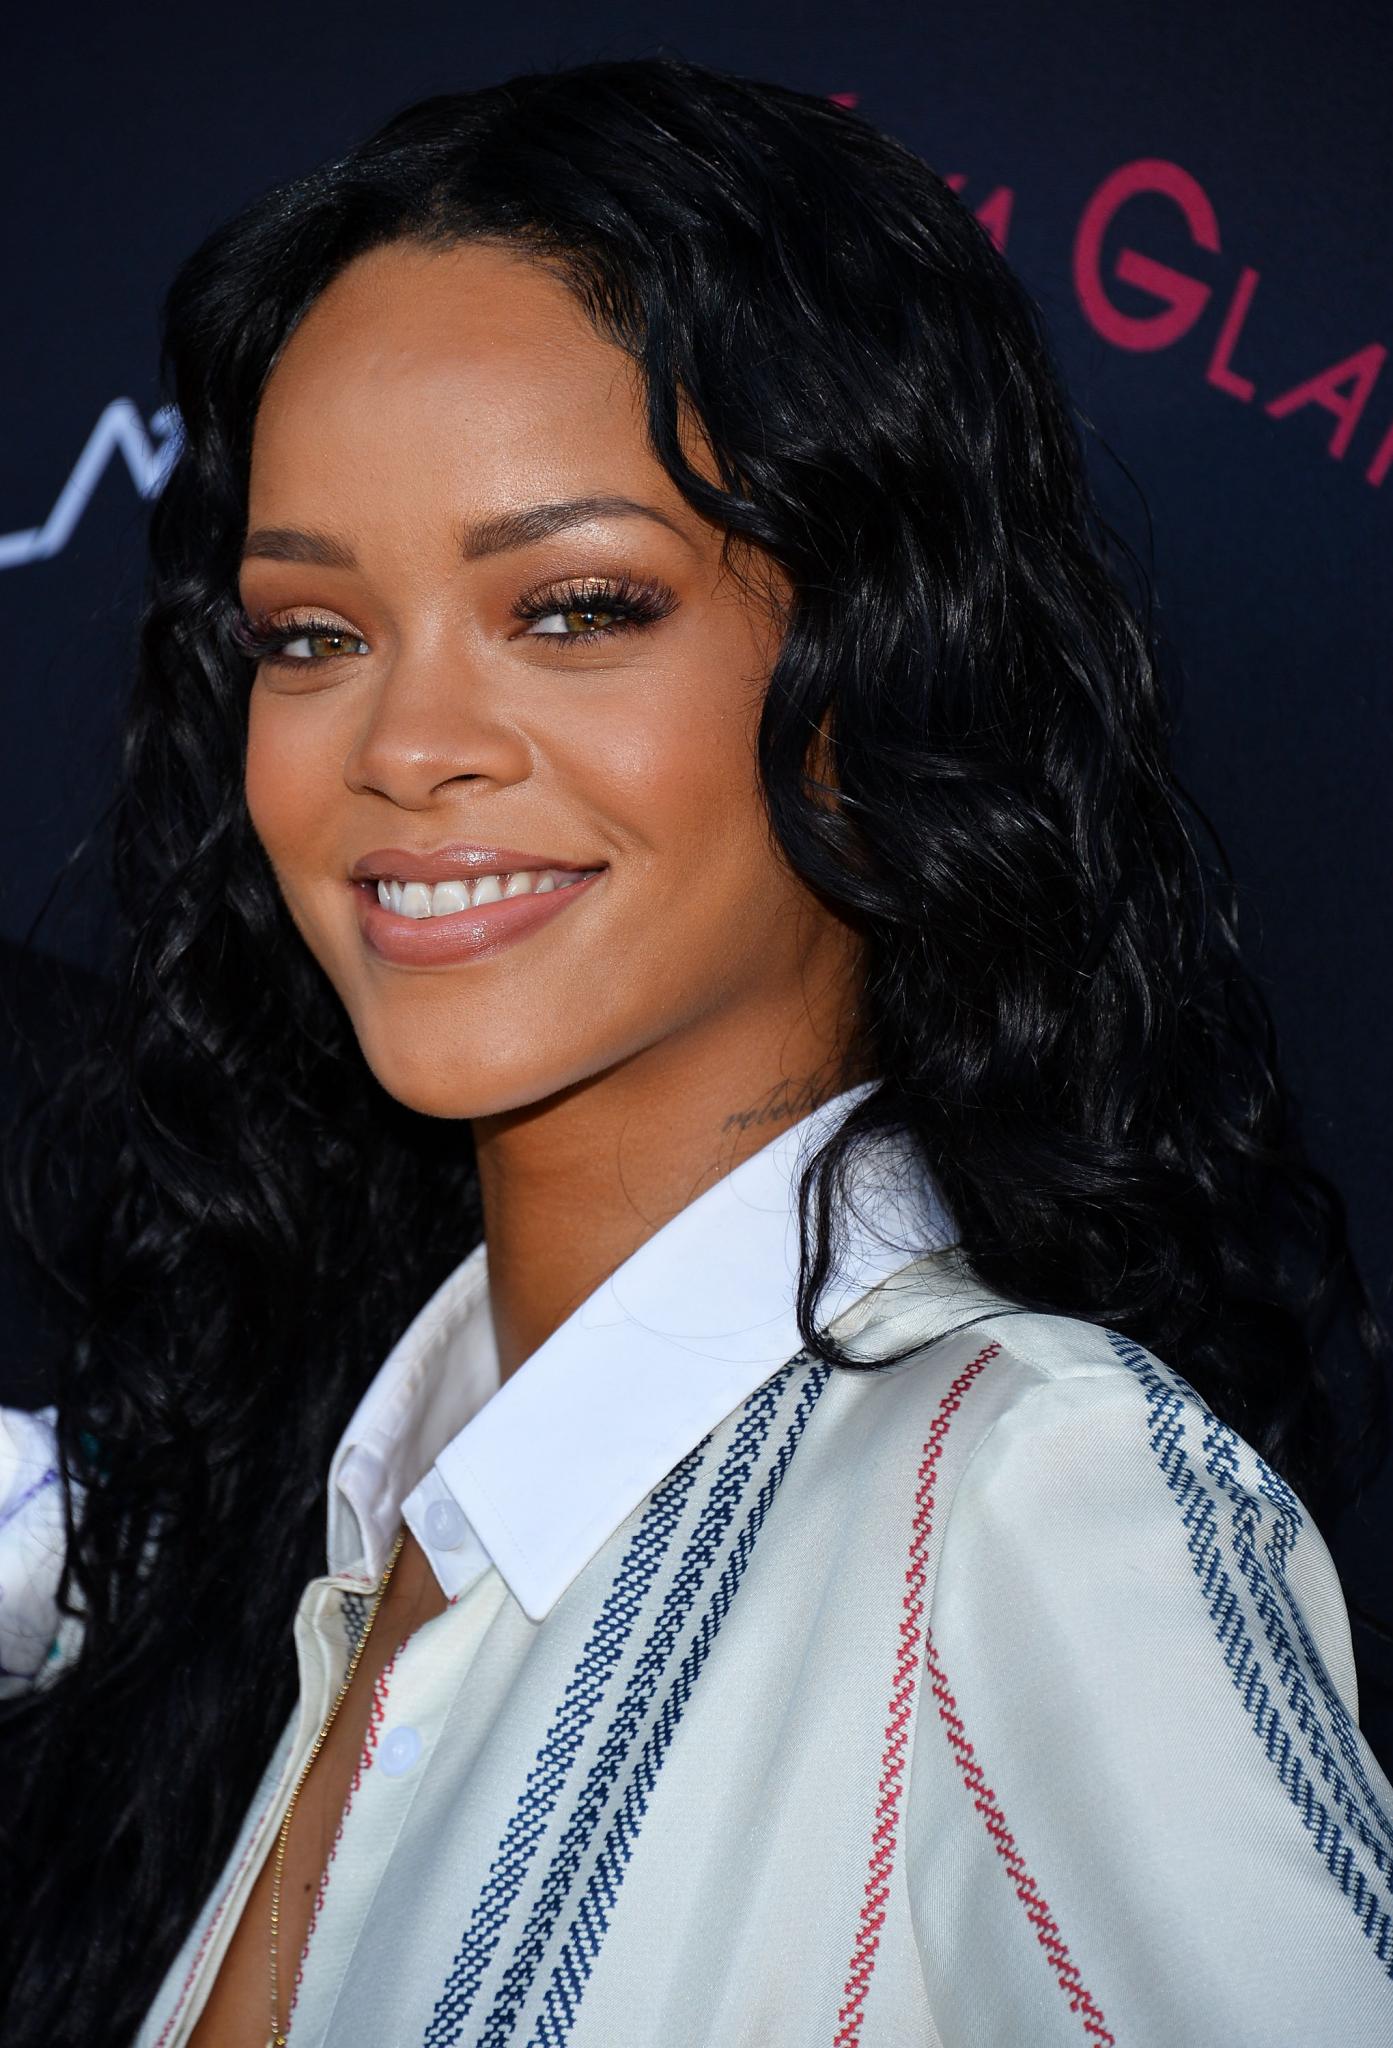 Rihanna Talks Icon Status, Latest Grammy Win
